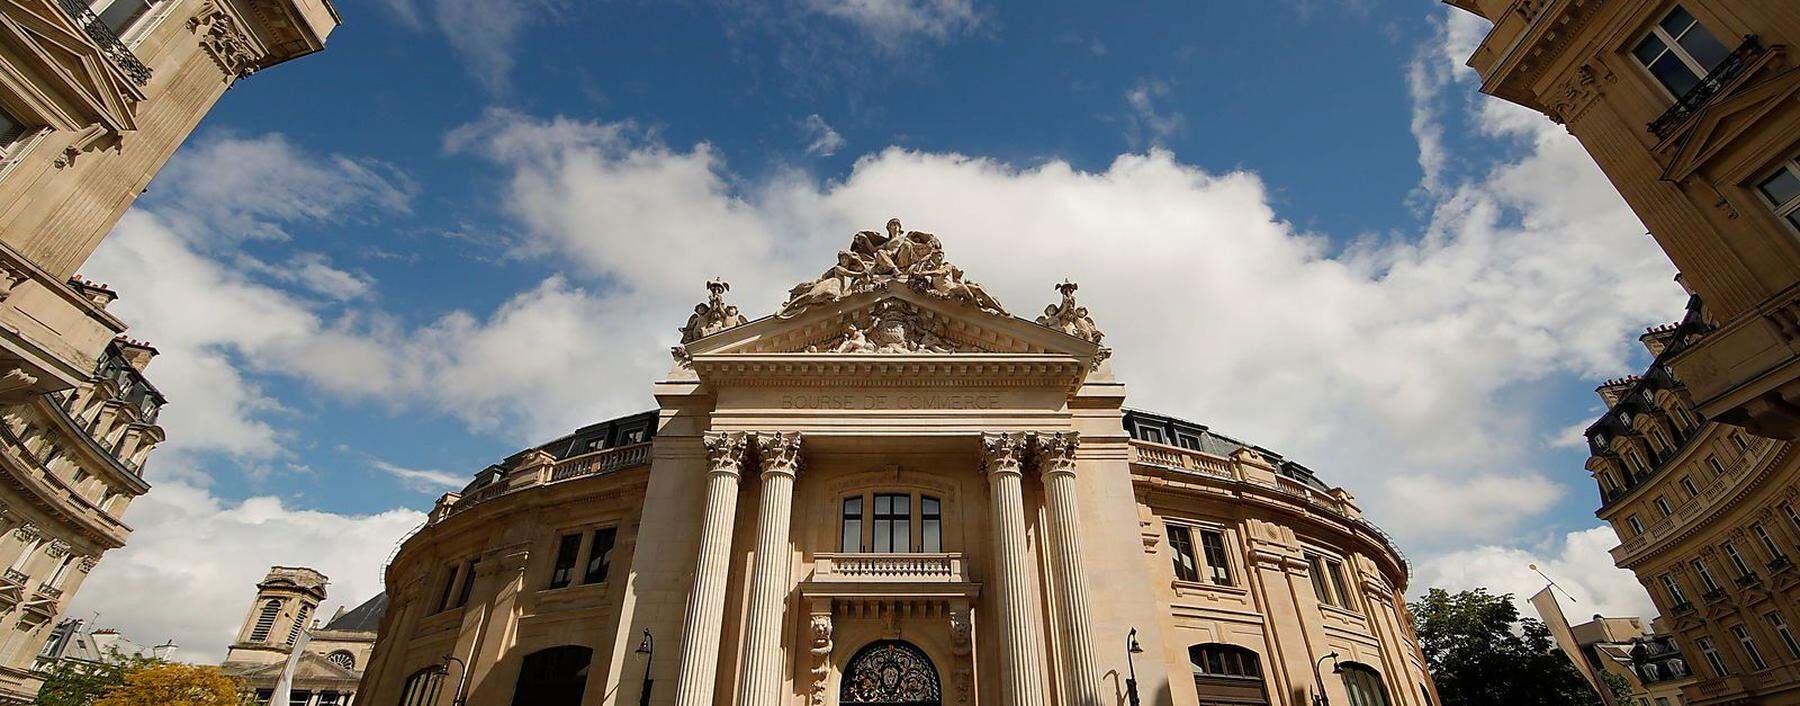 Das Gebäude der alten Pariser Handelsbörse stammt aus dem 18. Jahrhundert. 